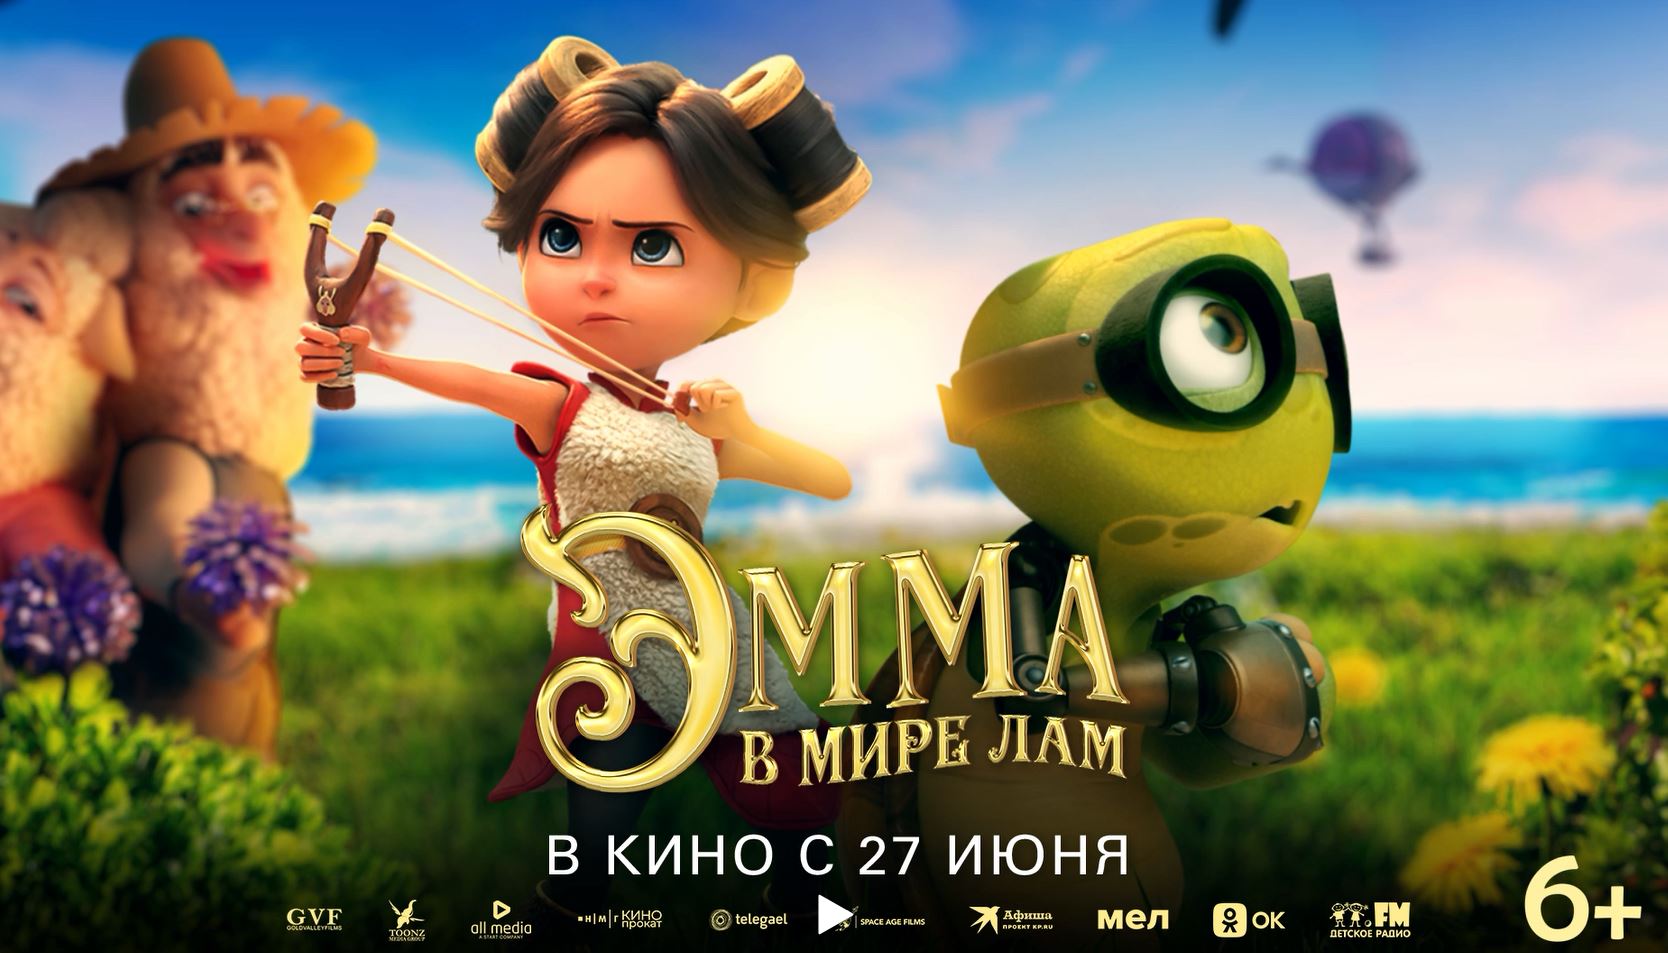 Кинозал ДК приглашает с 27 июня на мультфильм "ЭММА в мире ЛАМ" 2D, 6+, 110 мин. #кинозалДКям